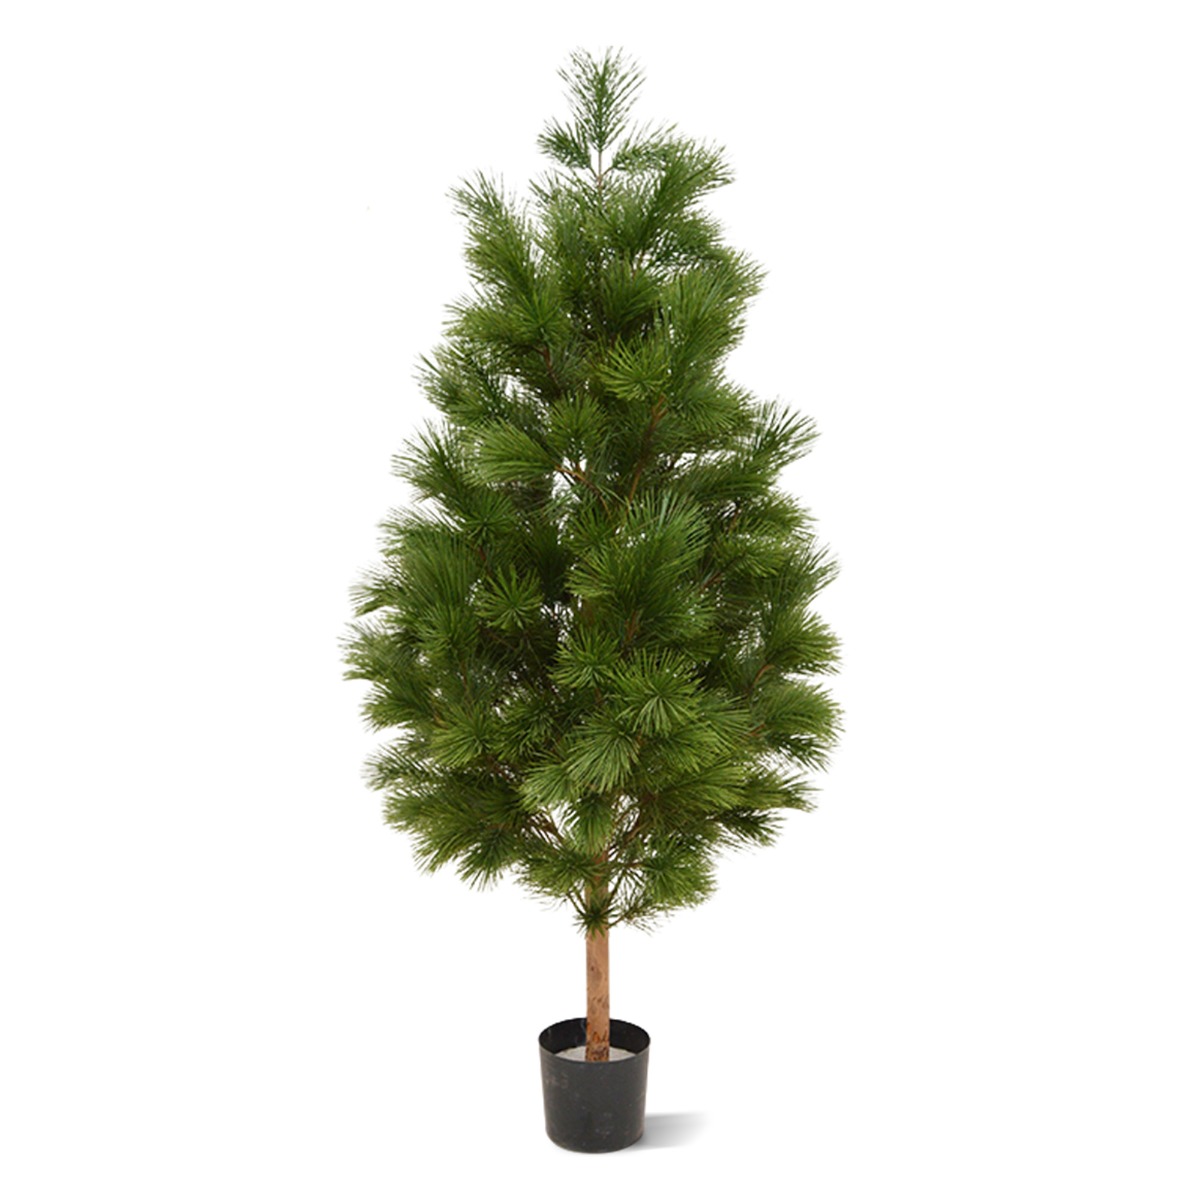 Pinus Kunstbaum Deluxe XL 160 cm UV-beständig unter Wetterfeste Kunstbäume